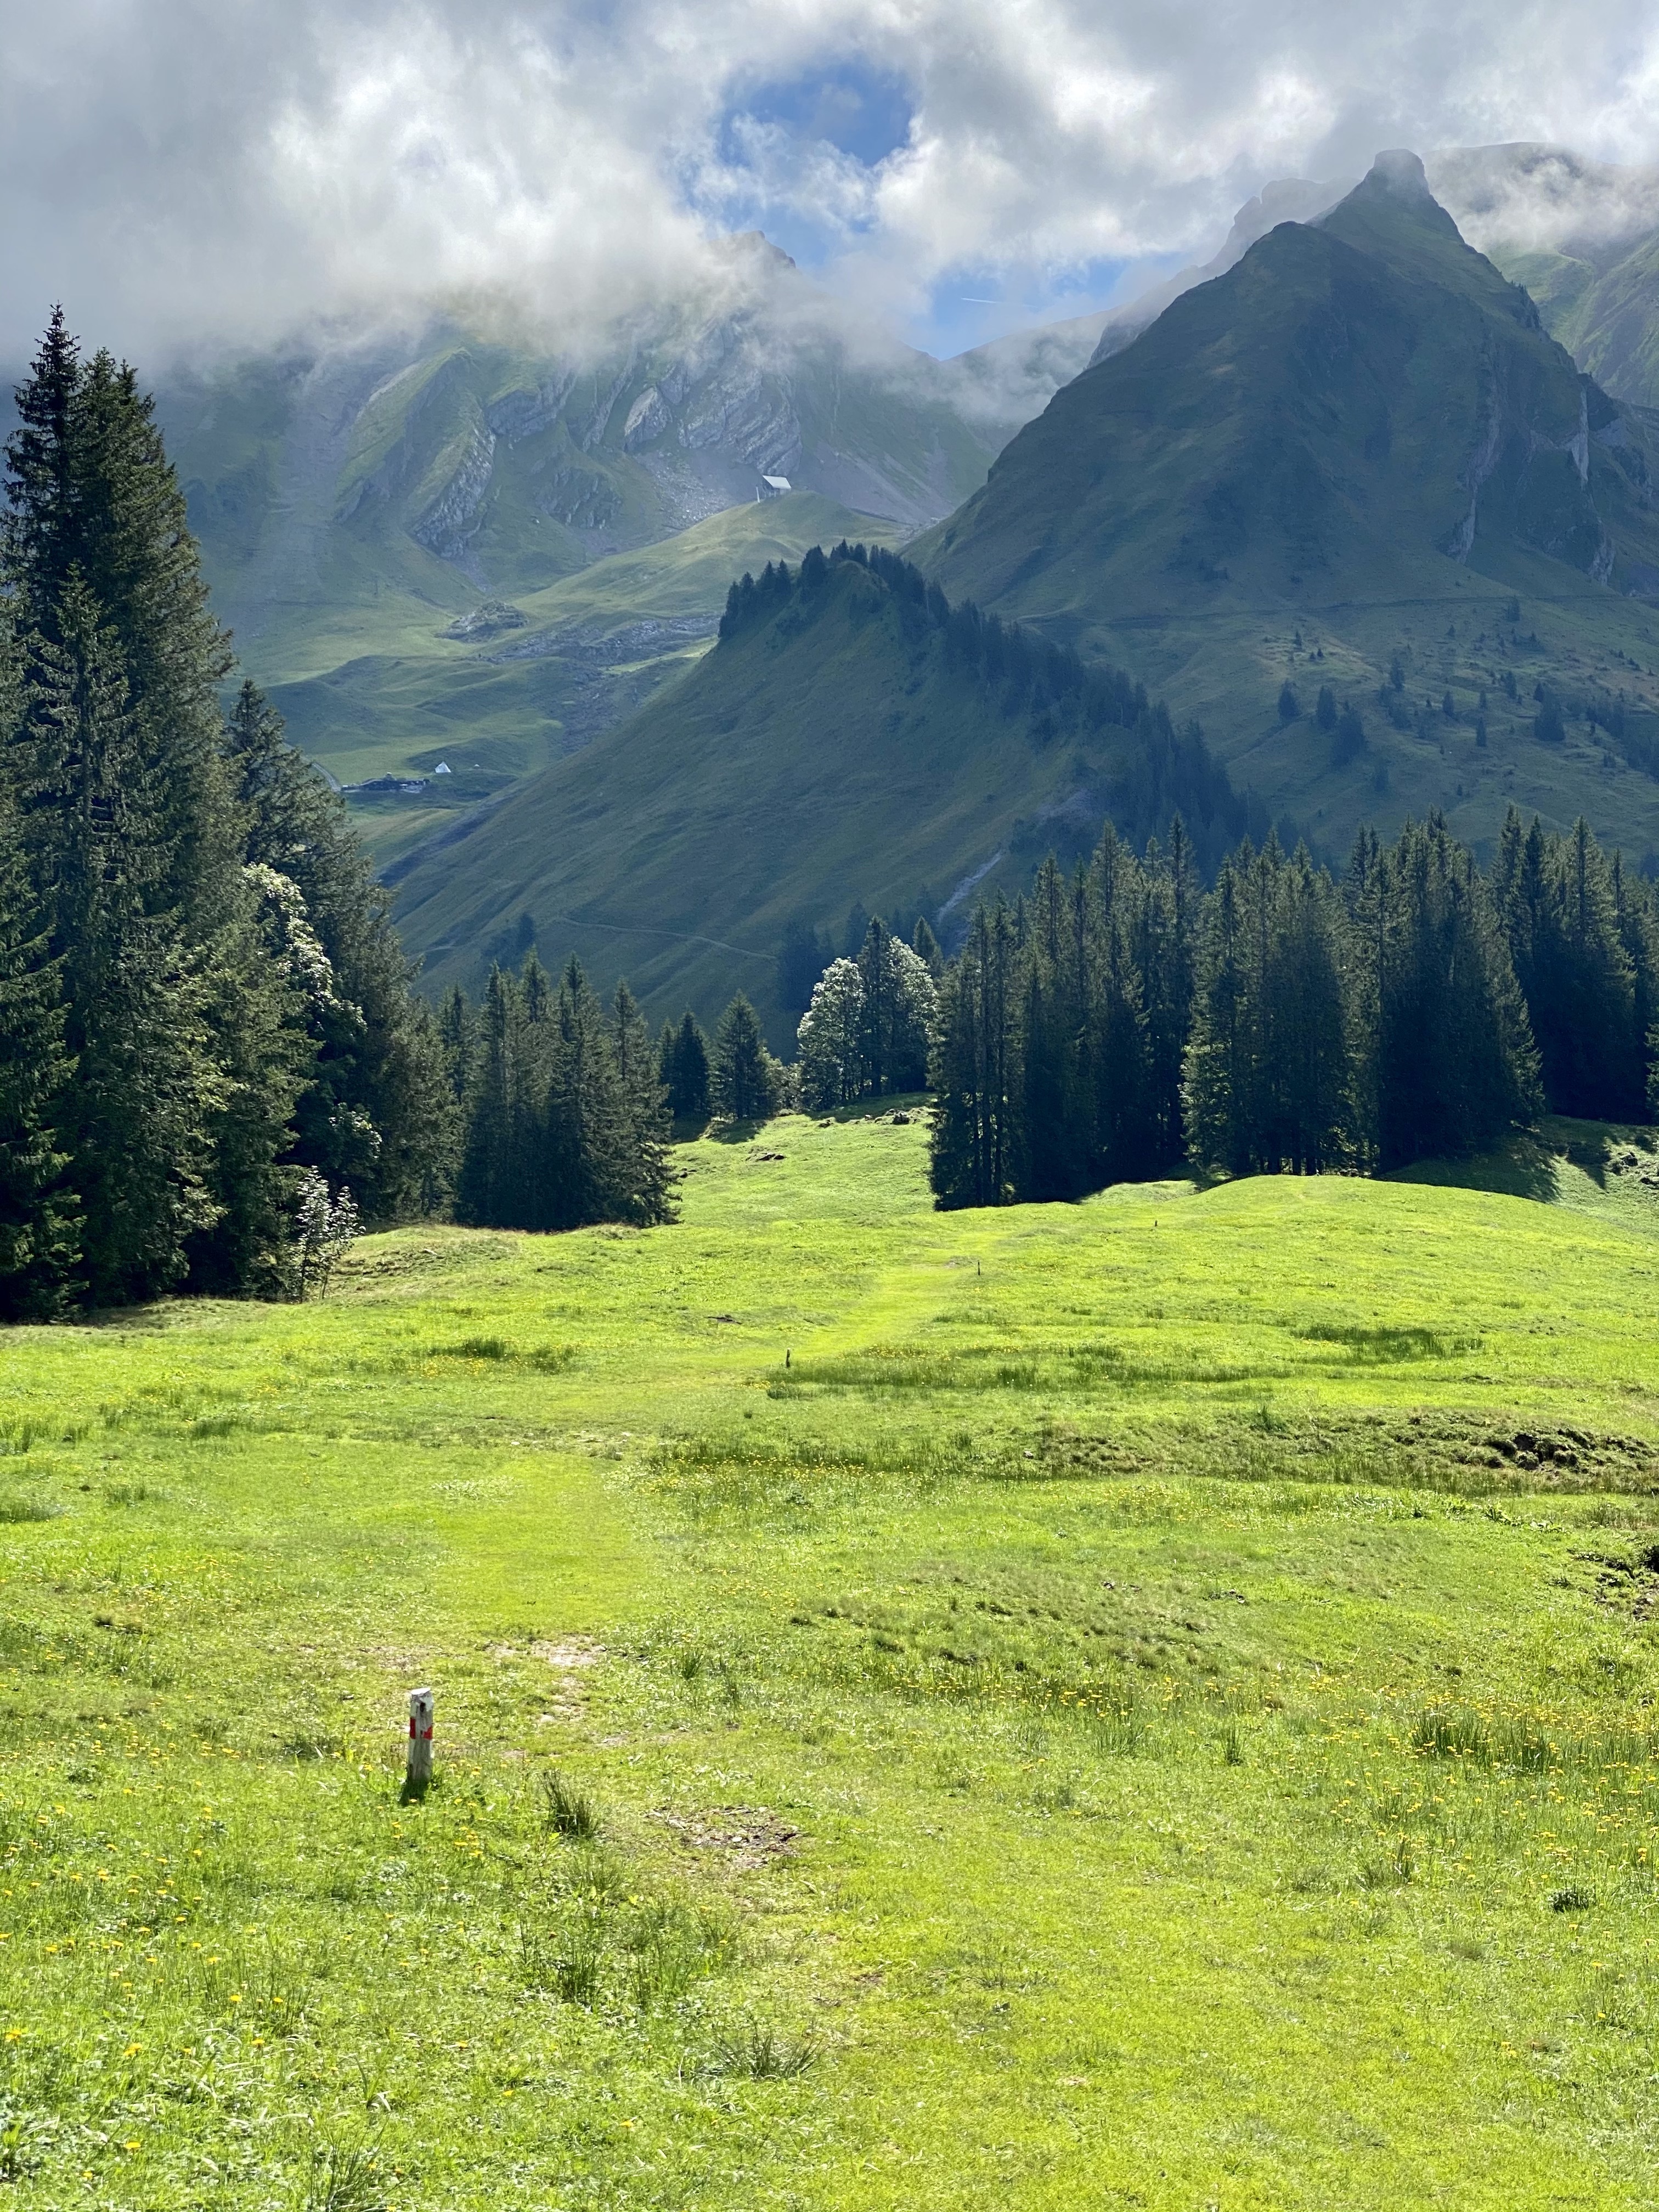 Grassy trail in the Alps